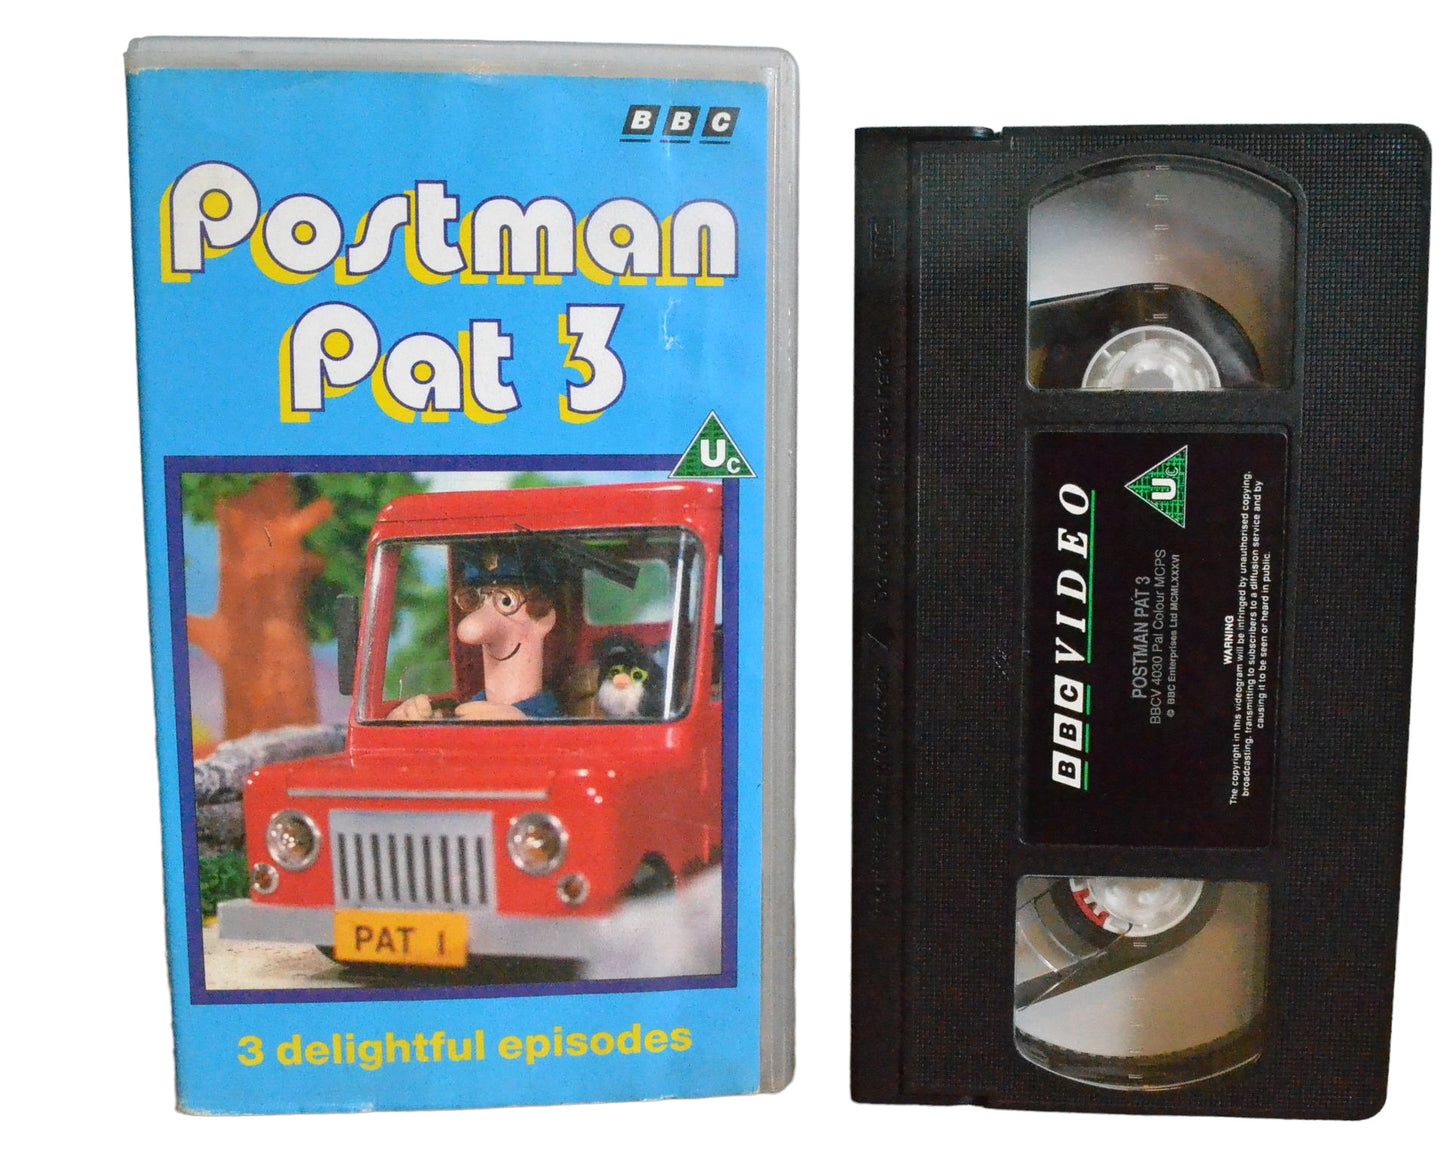 Postman Pat 3 (Pat's Thirsty Day) - BBC Video - BBCV4030 - Children - Pal - VHS-